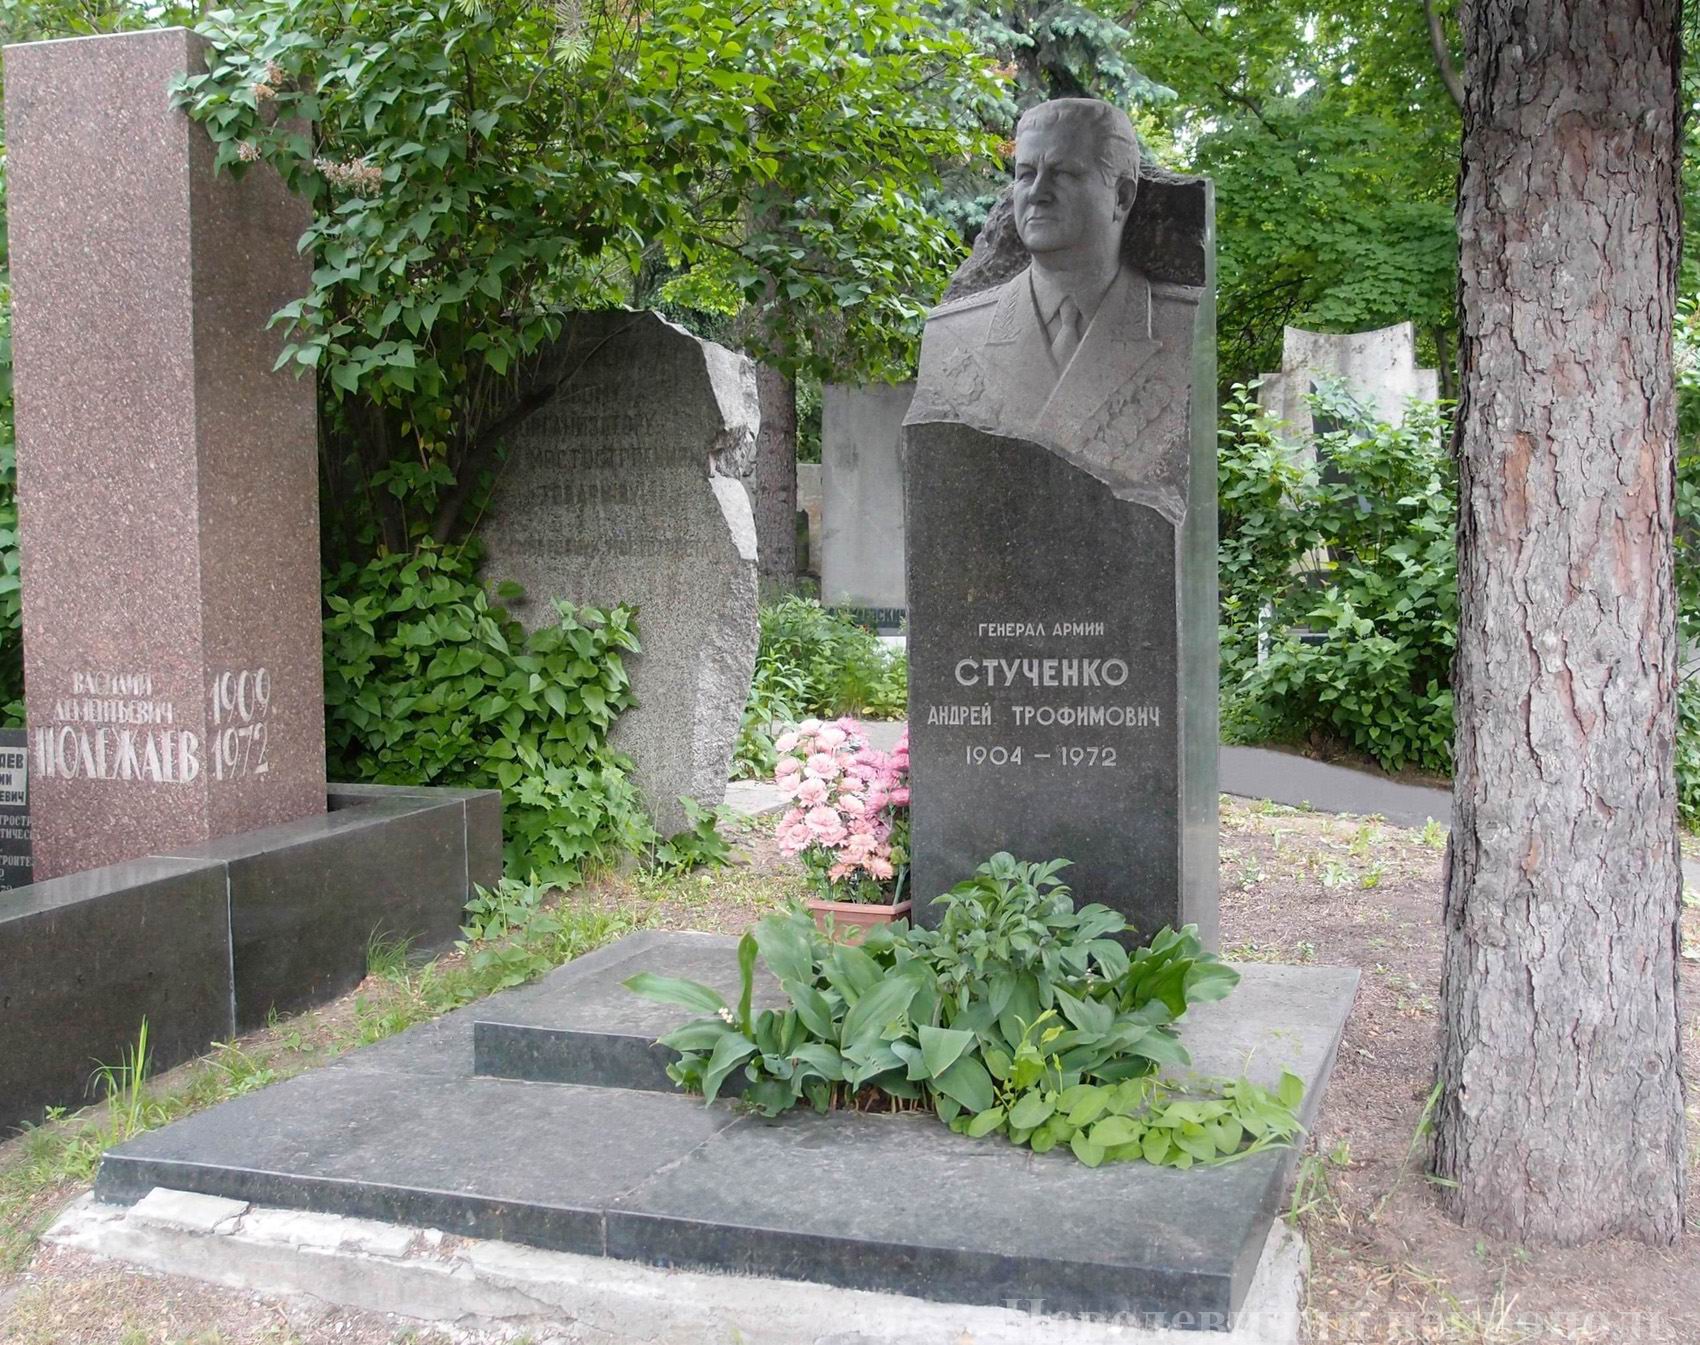 Памятник на могиле Стученко А.Т. (1904–1972), на Новодевичьем кладбище (6–40–11). Нажмите левую кнопку мыши, чтобы увидеть фрагмент памятника.